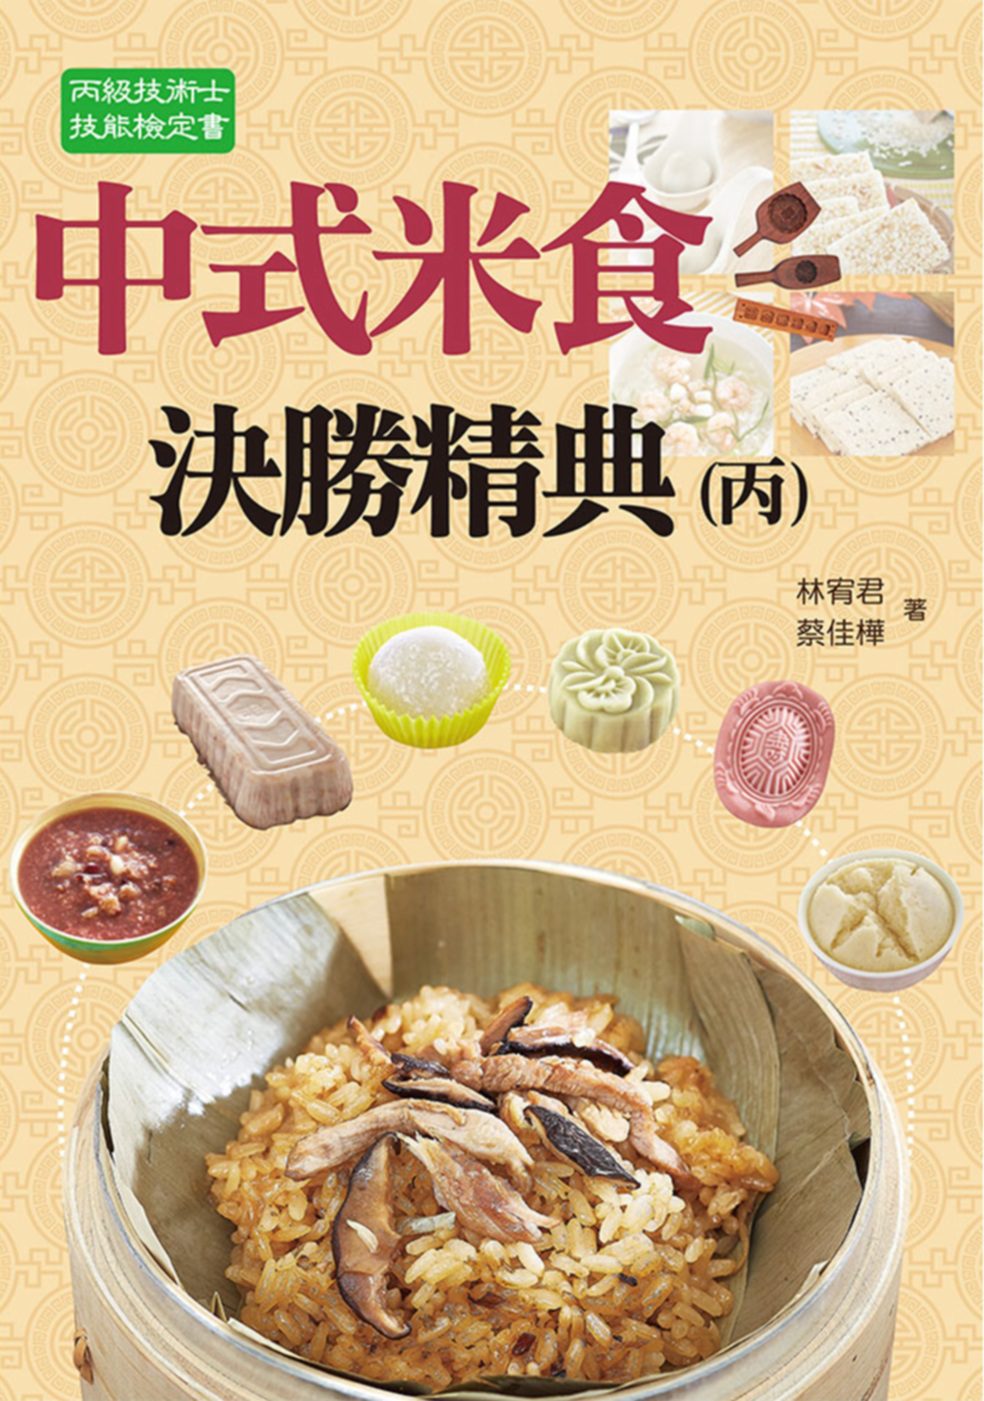 中式米食決勝精典(丙)